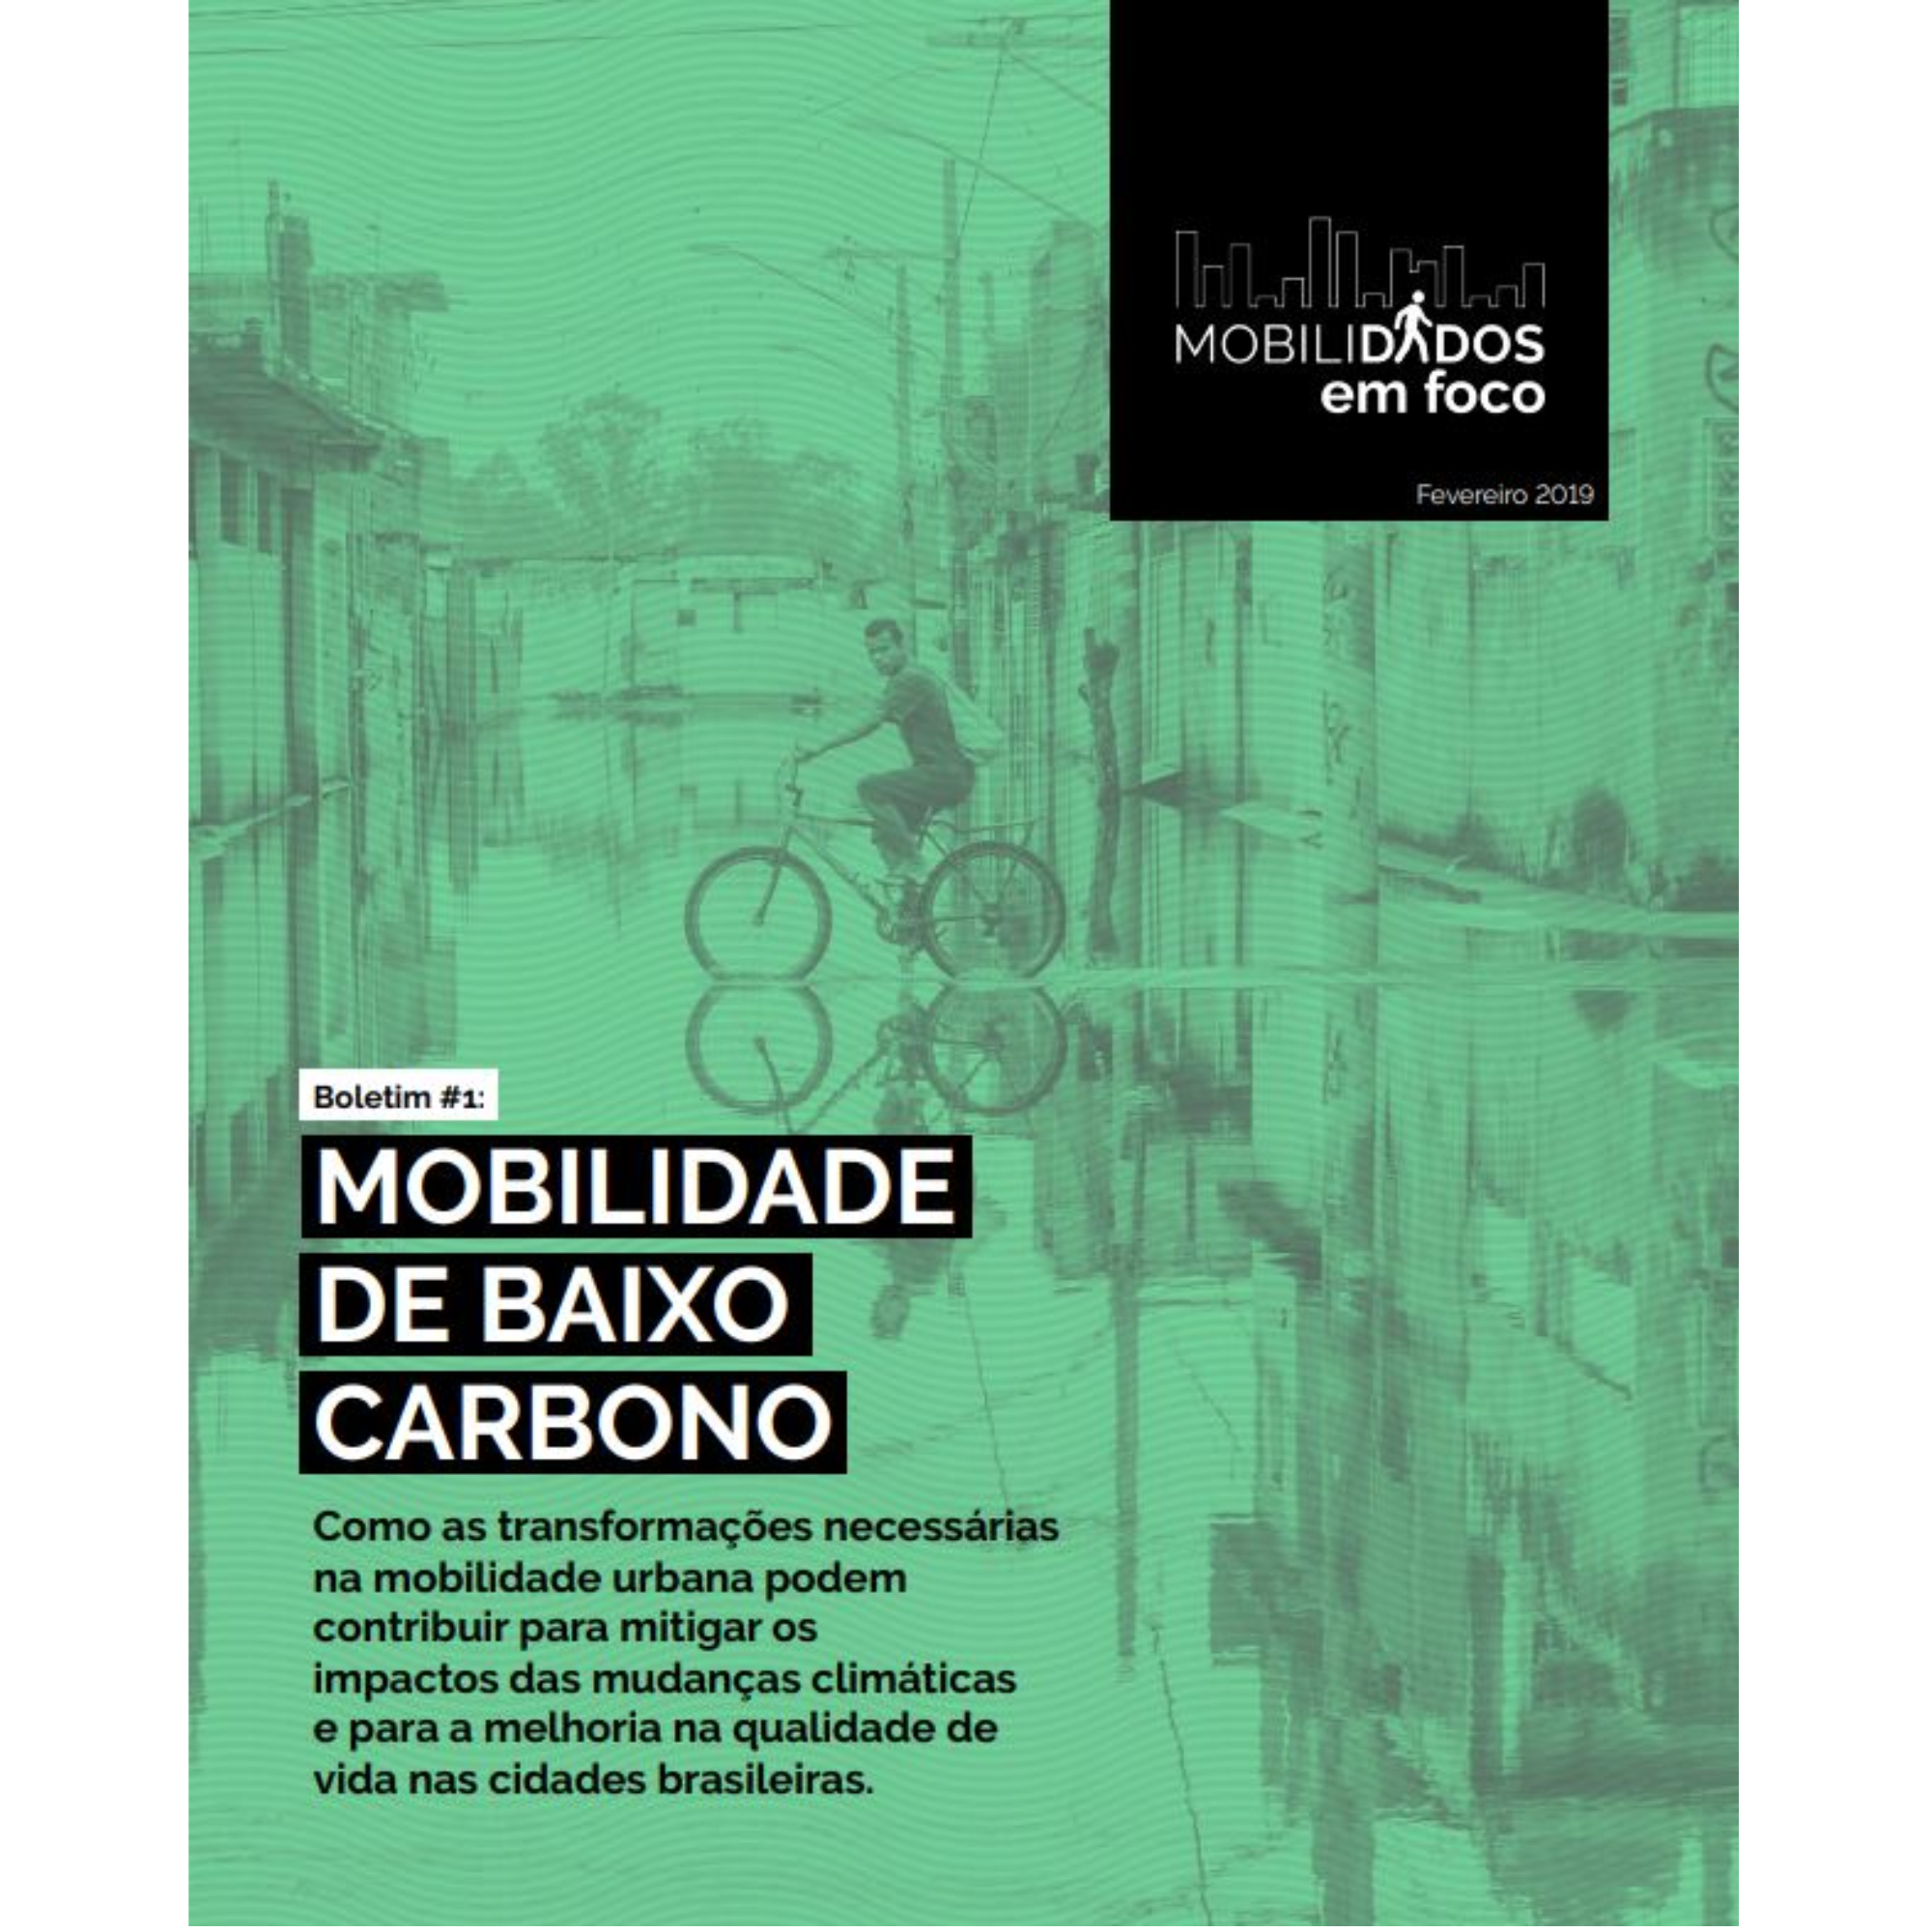 Boletim #1 MobiliDADOS: mobilidade de baixo carbono